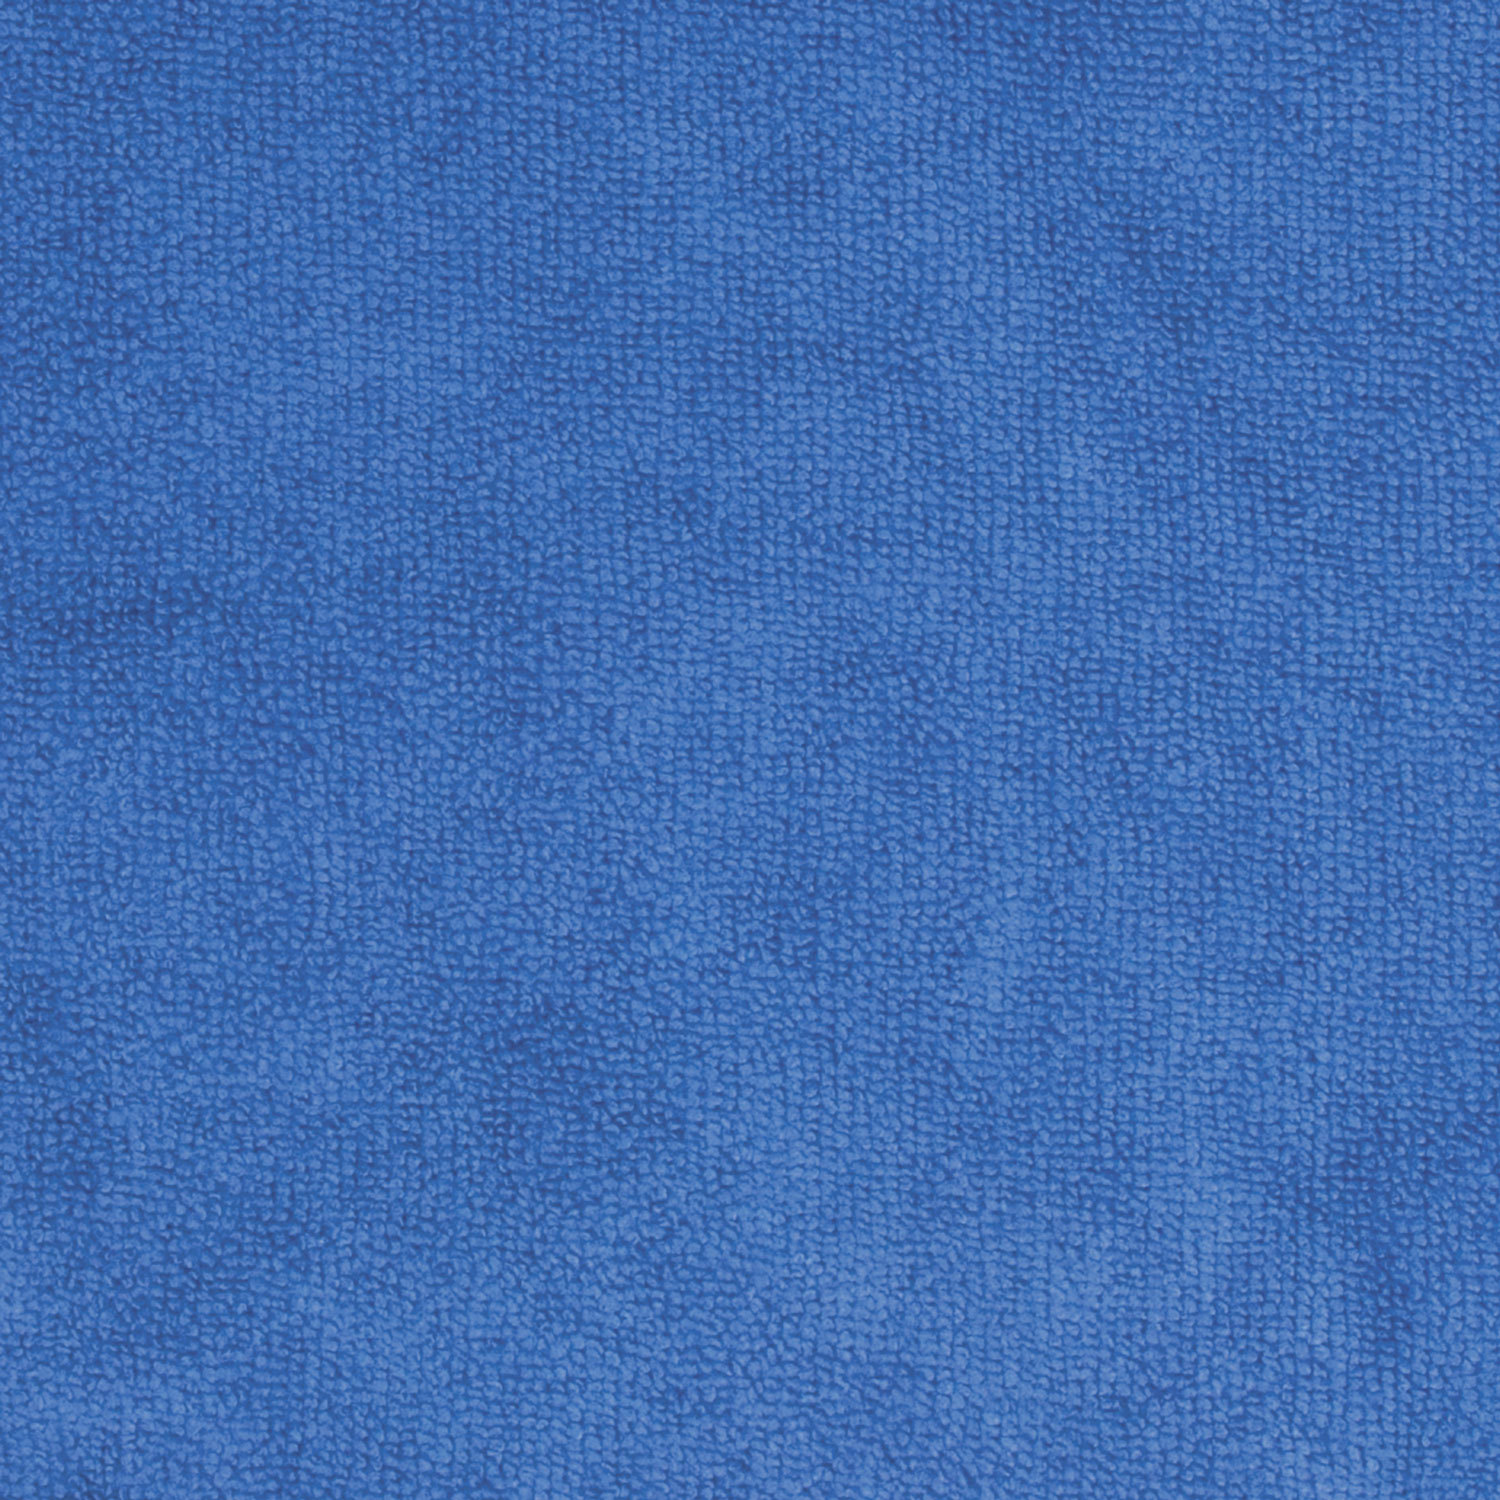 Тряпка для мытья пола ЛАЙМА плотная микрофибра, 70х80 см, синяя, 601250